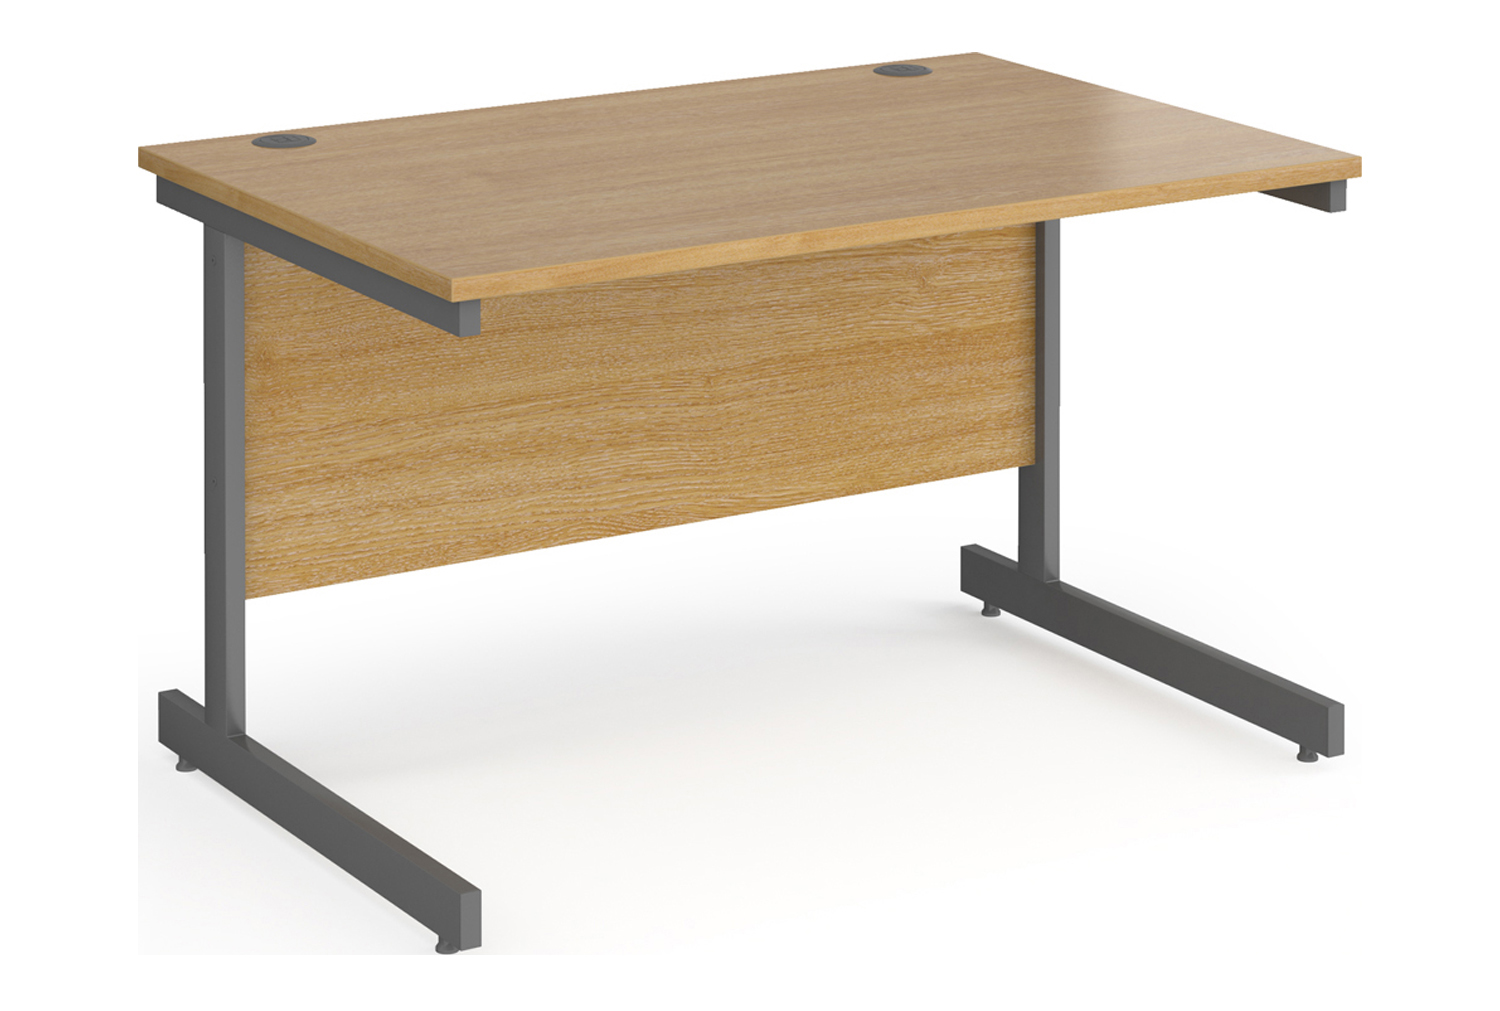 Value Line Classic+ Rectangular C-Leg Office Desk (Graphite Leg), 120wx80dx73h (cm), Oak, Express Delivery